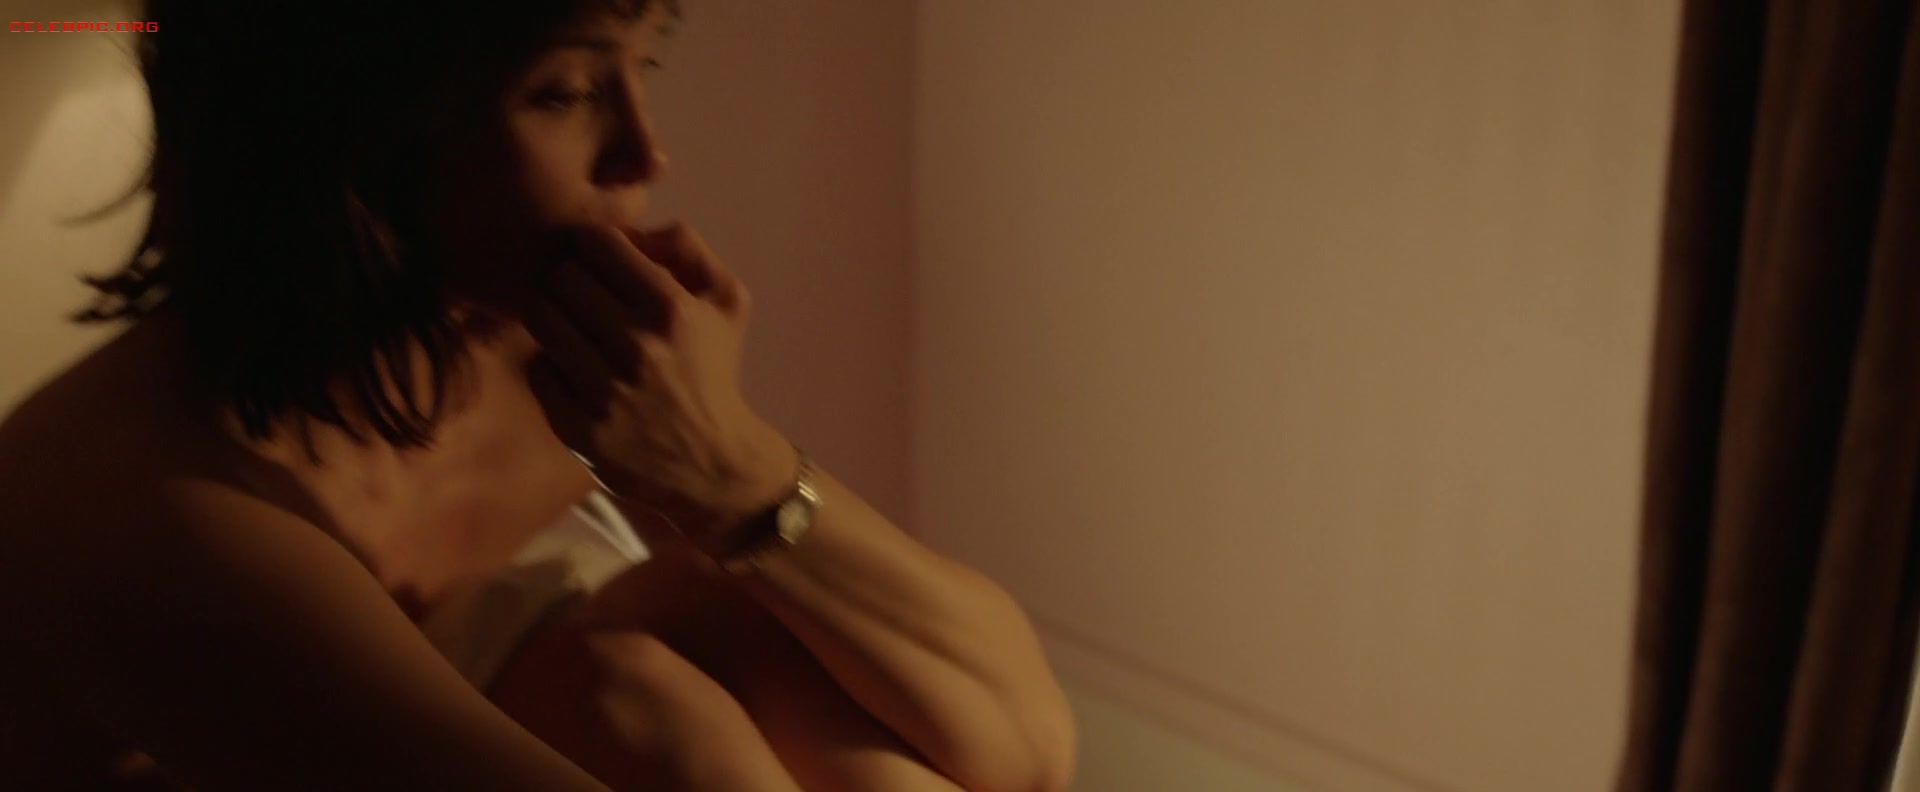 Gemma Arterton - The Escape 1080p (1) 1427.jpg